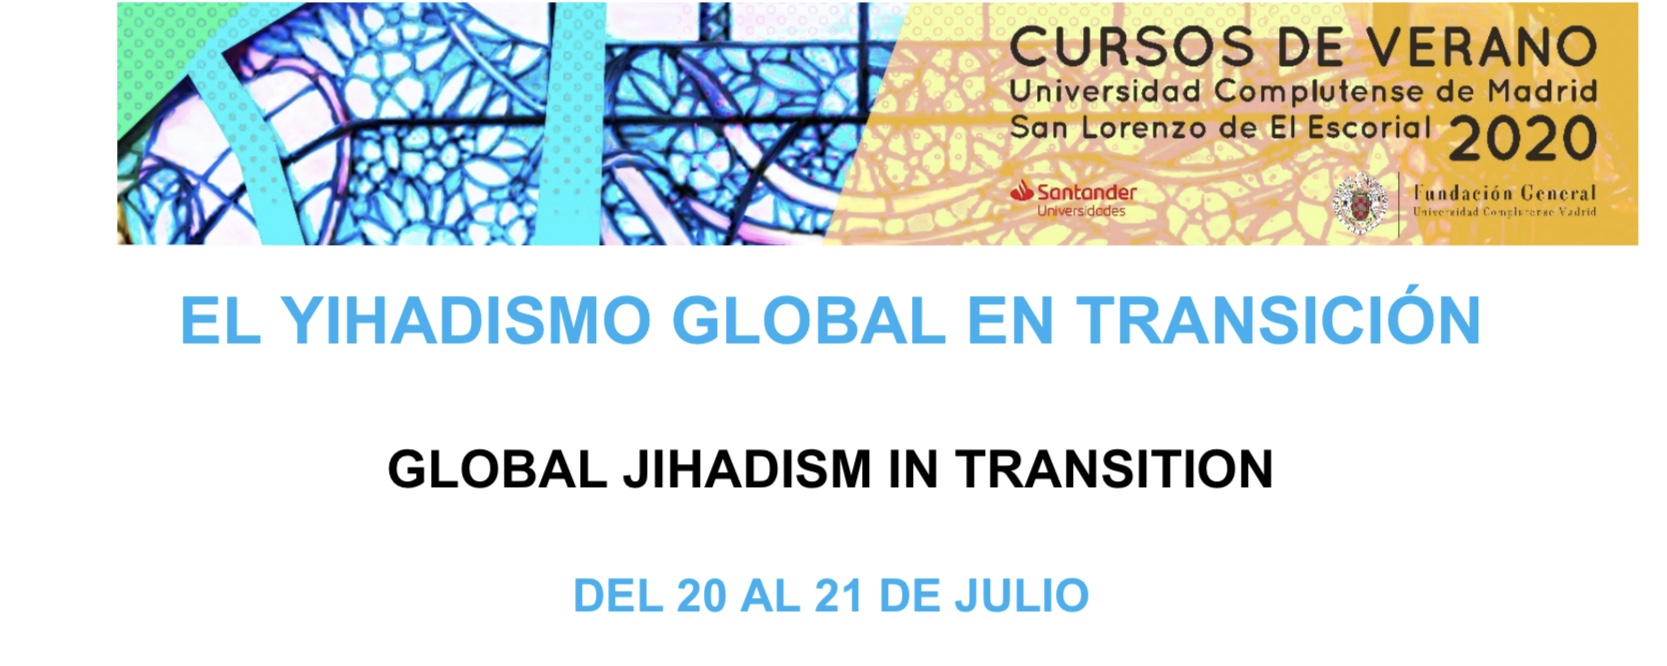 Curso De Verano En El Escorial: El Yihadismo Global En Transición. 20 Y 21 De Julio